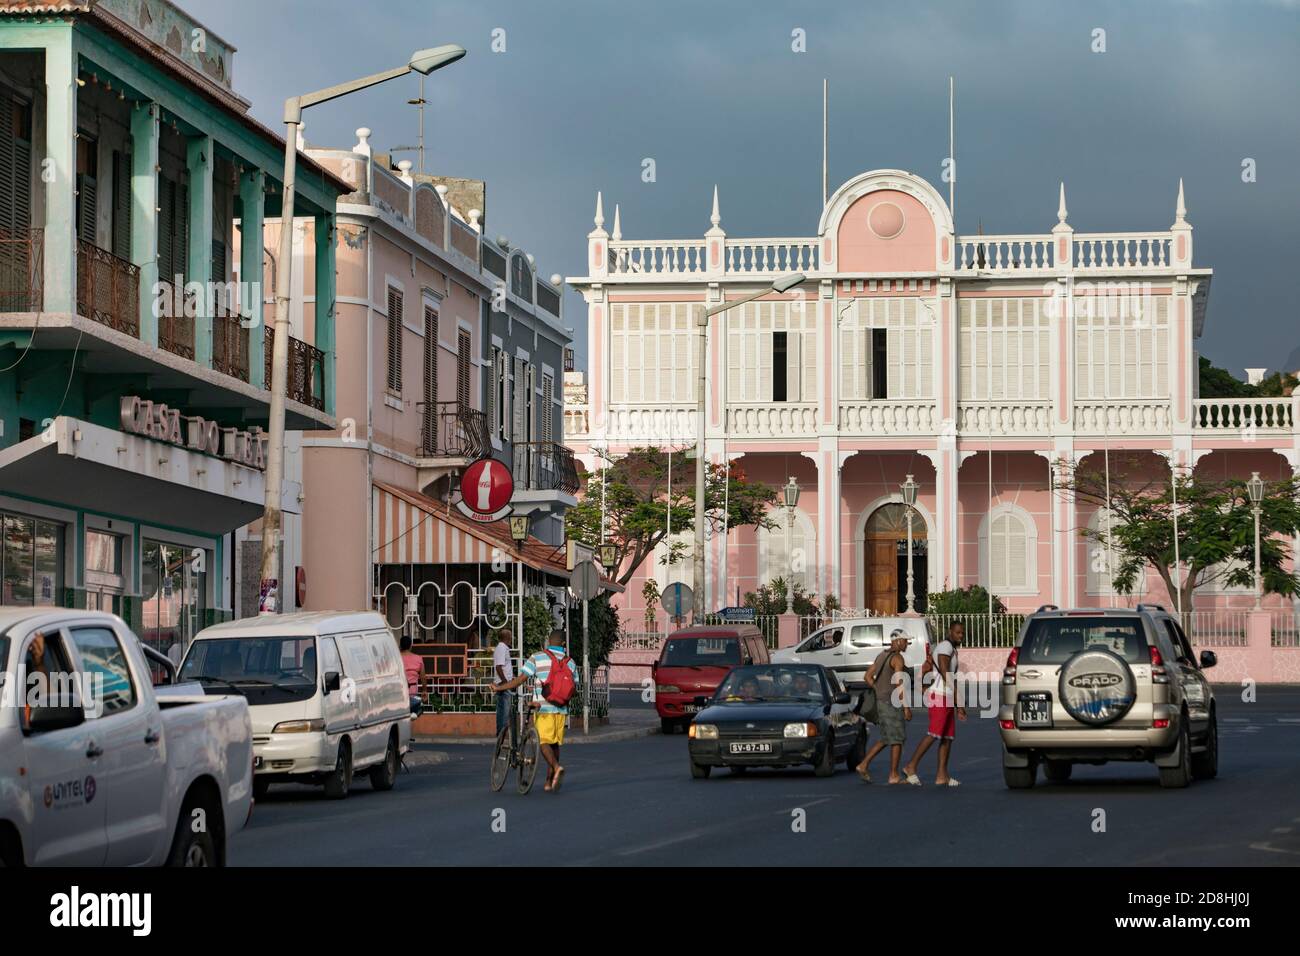 Scena di strada trafficata nella città di Mindelo che mostra il Palazzo della gente sull'isola di Sao Vicente, Capo Verde, Africa. Foto Stock